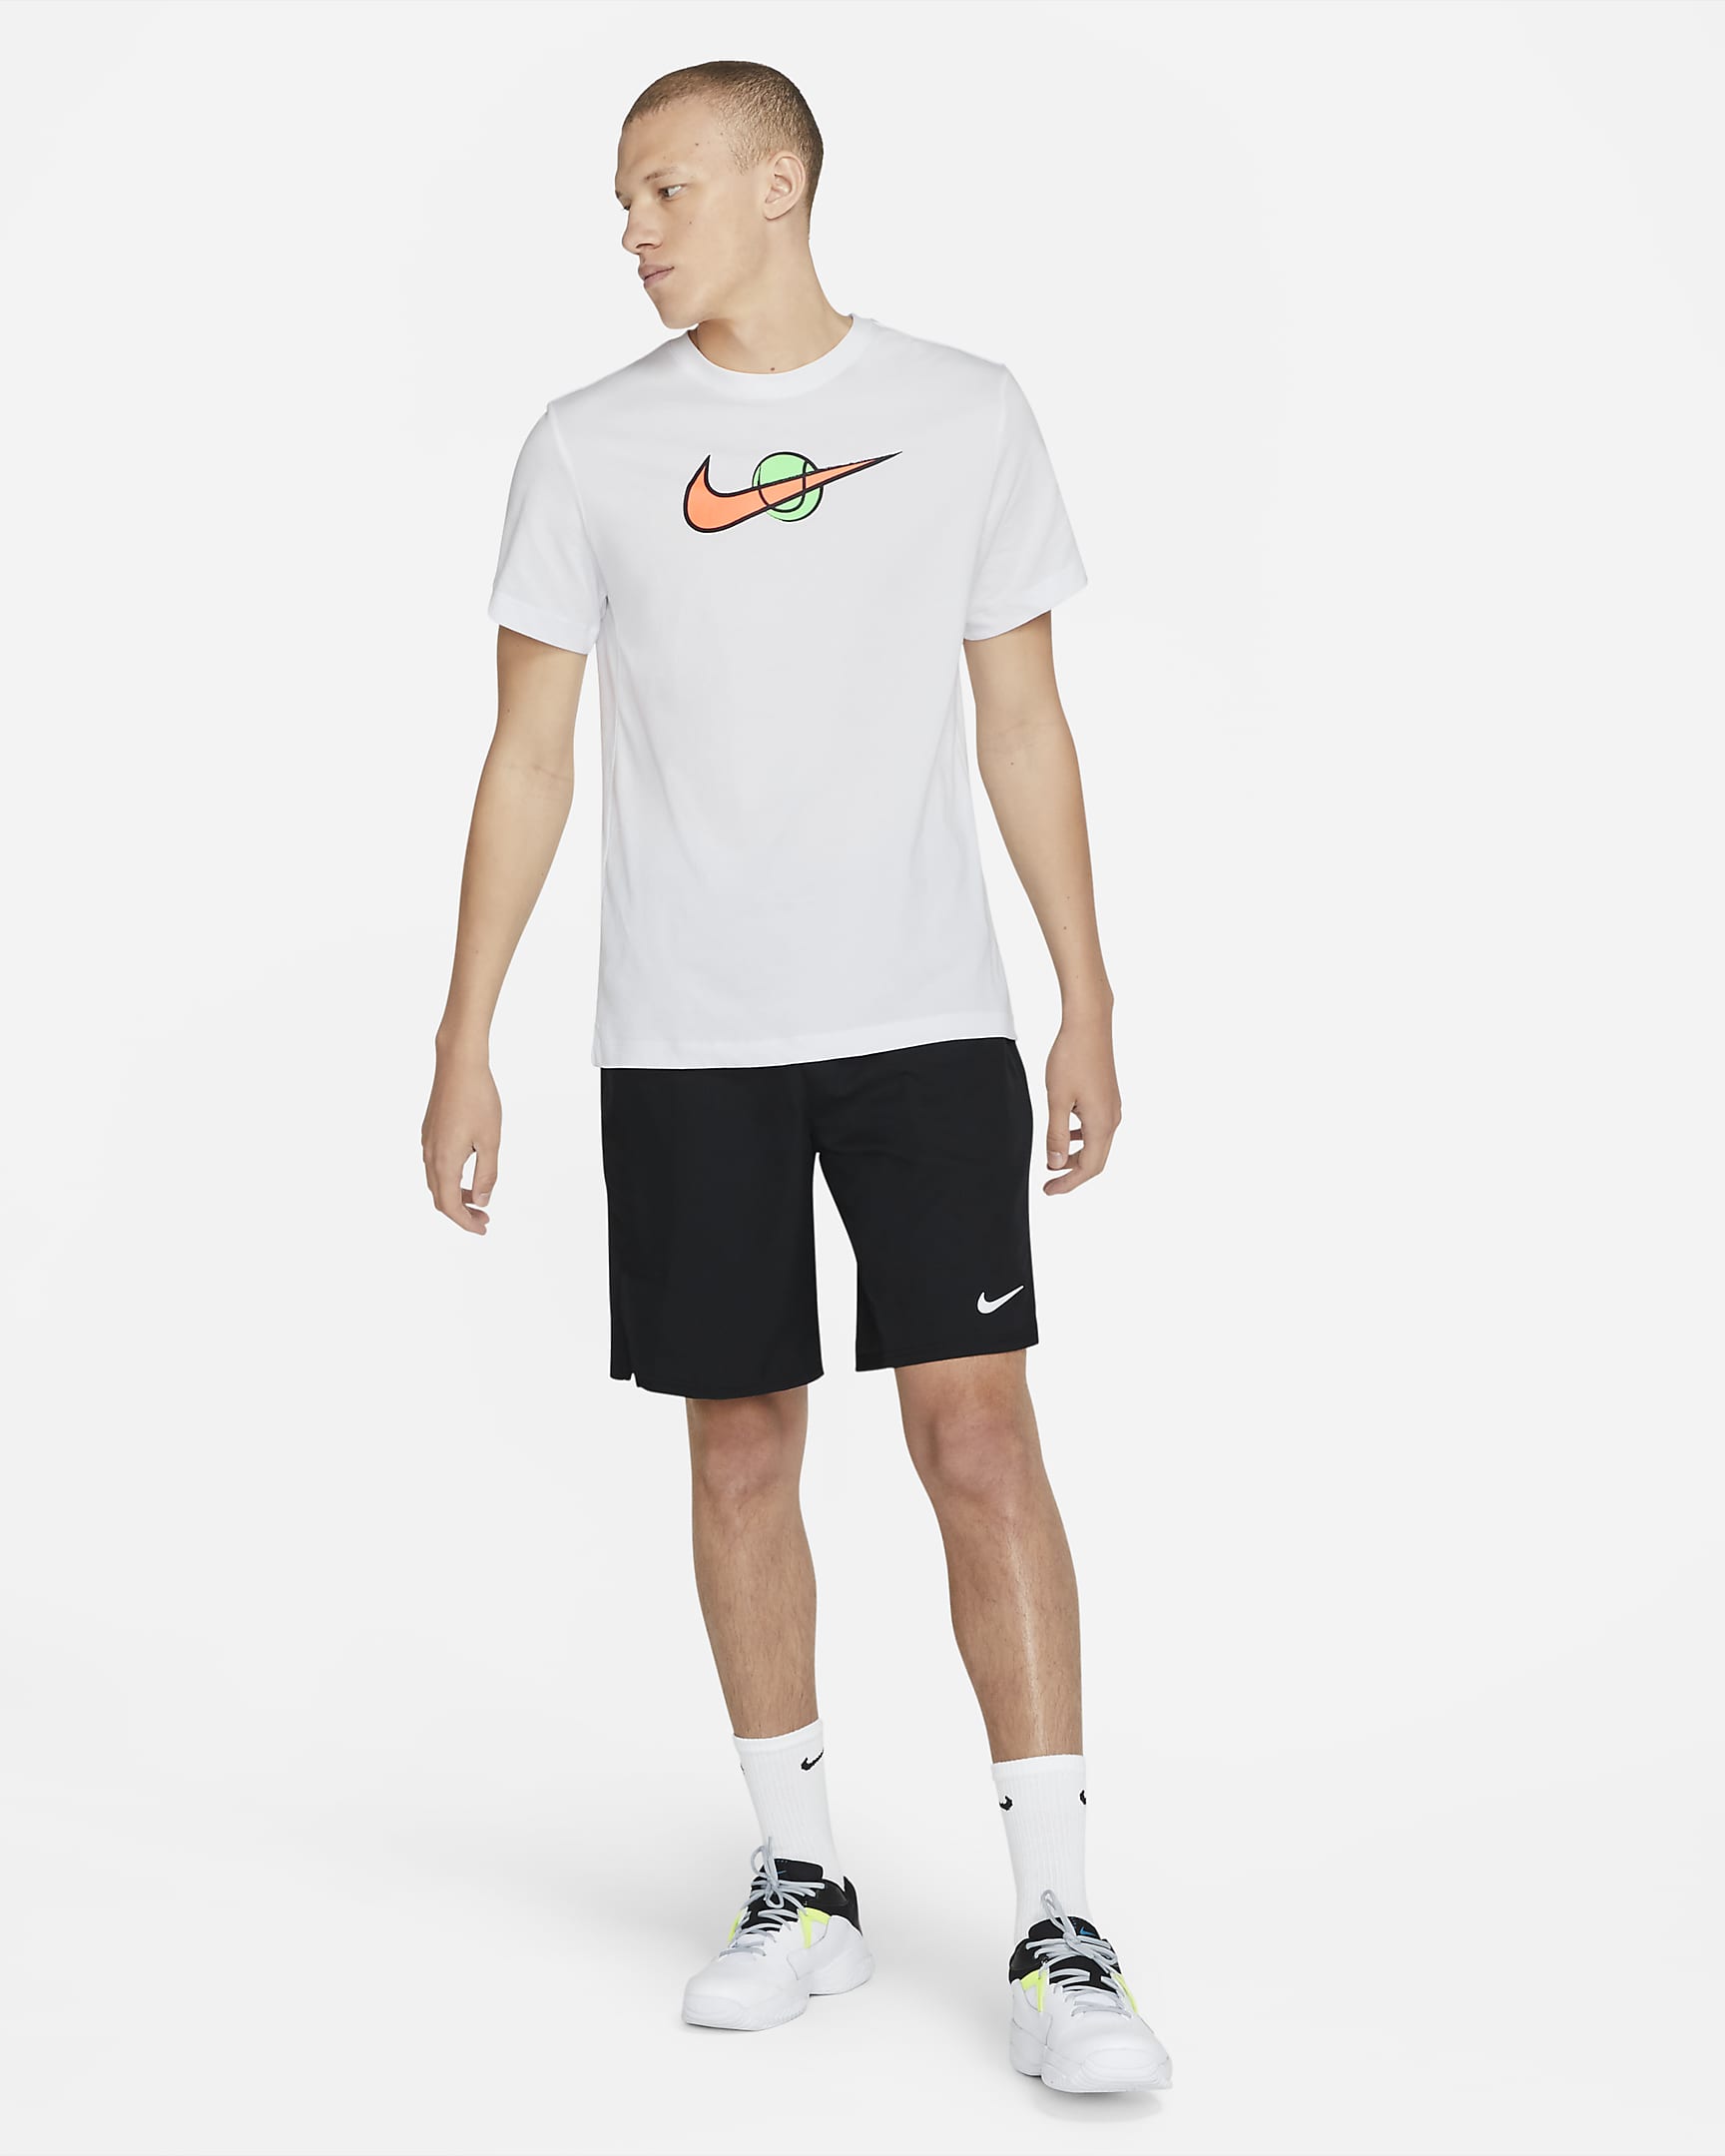 NikeCourt Men's Swoosh Tennis T-Shirt. Nike CH